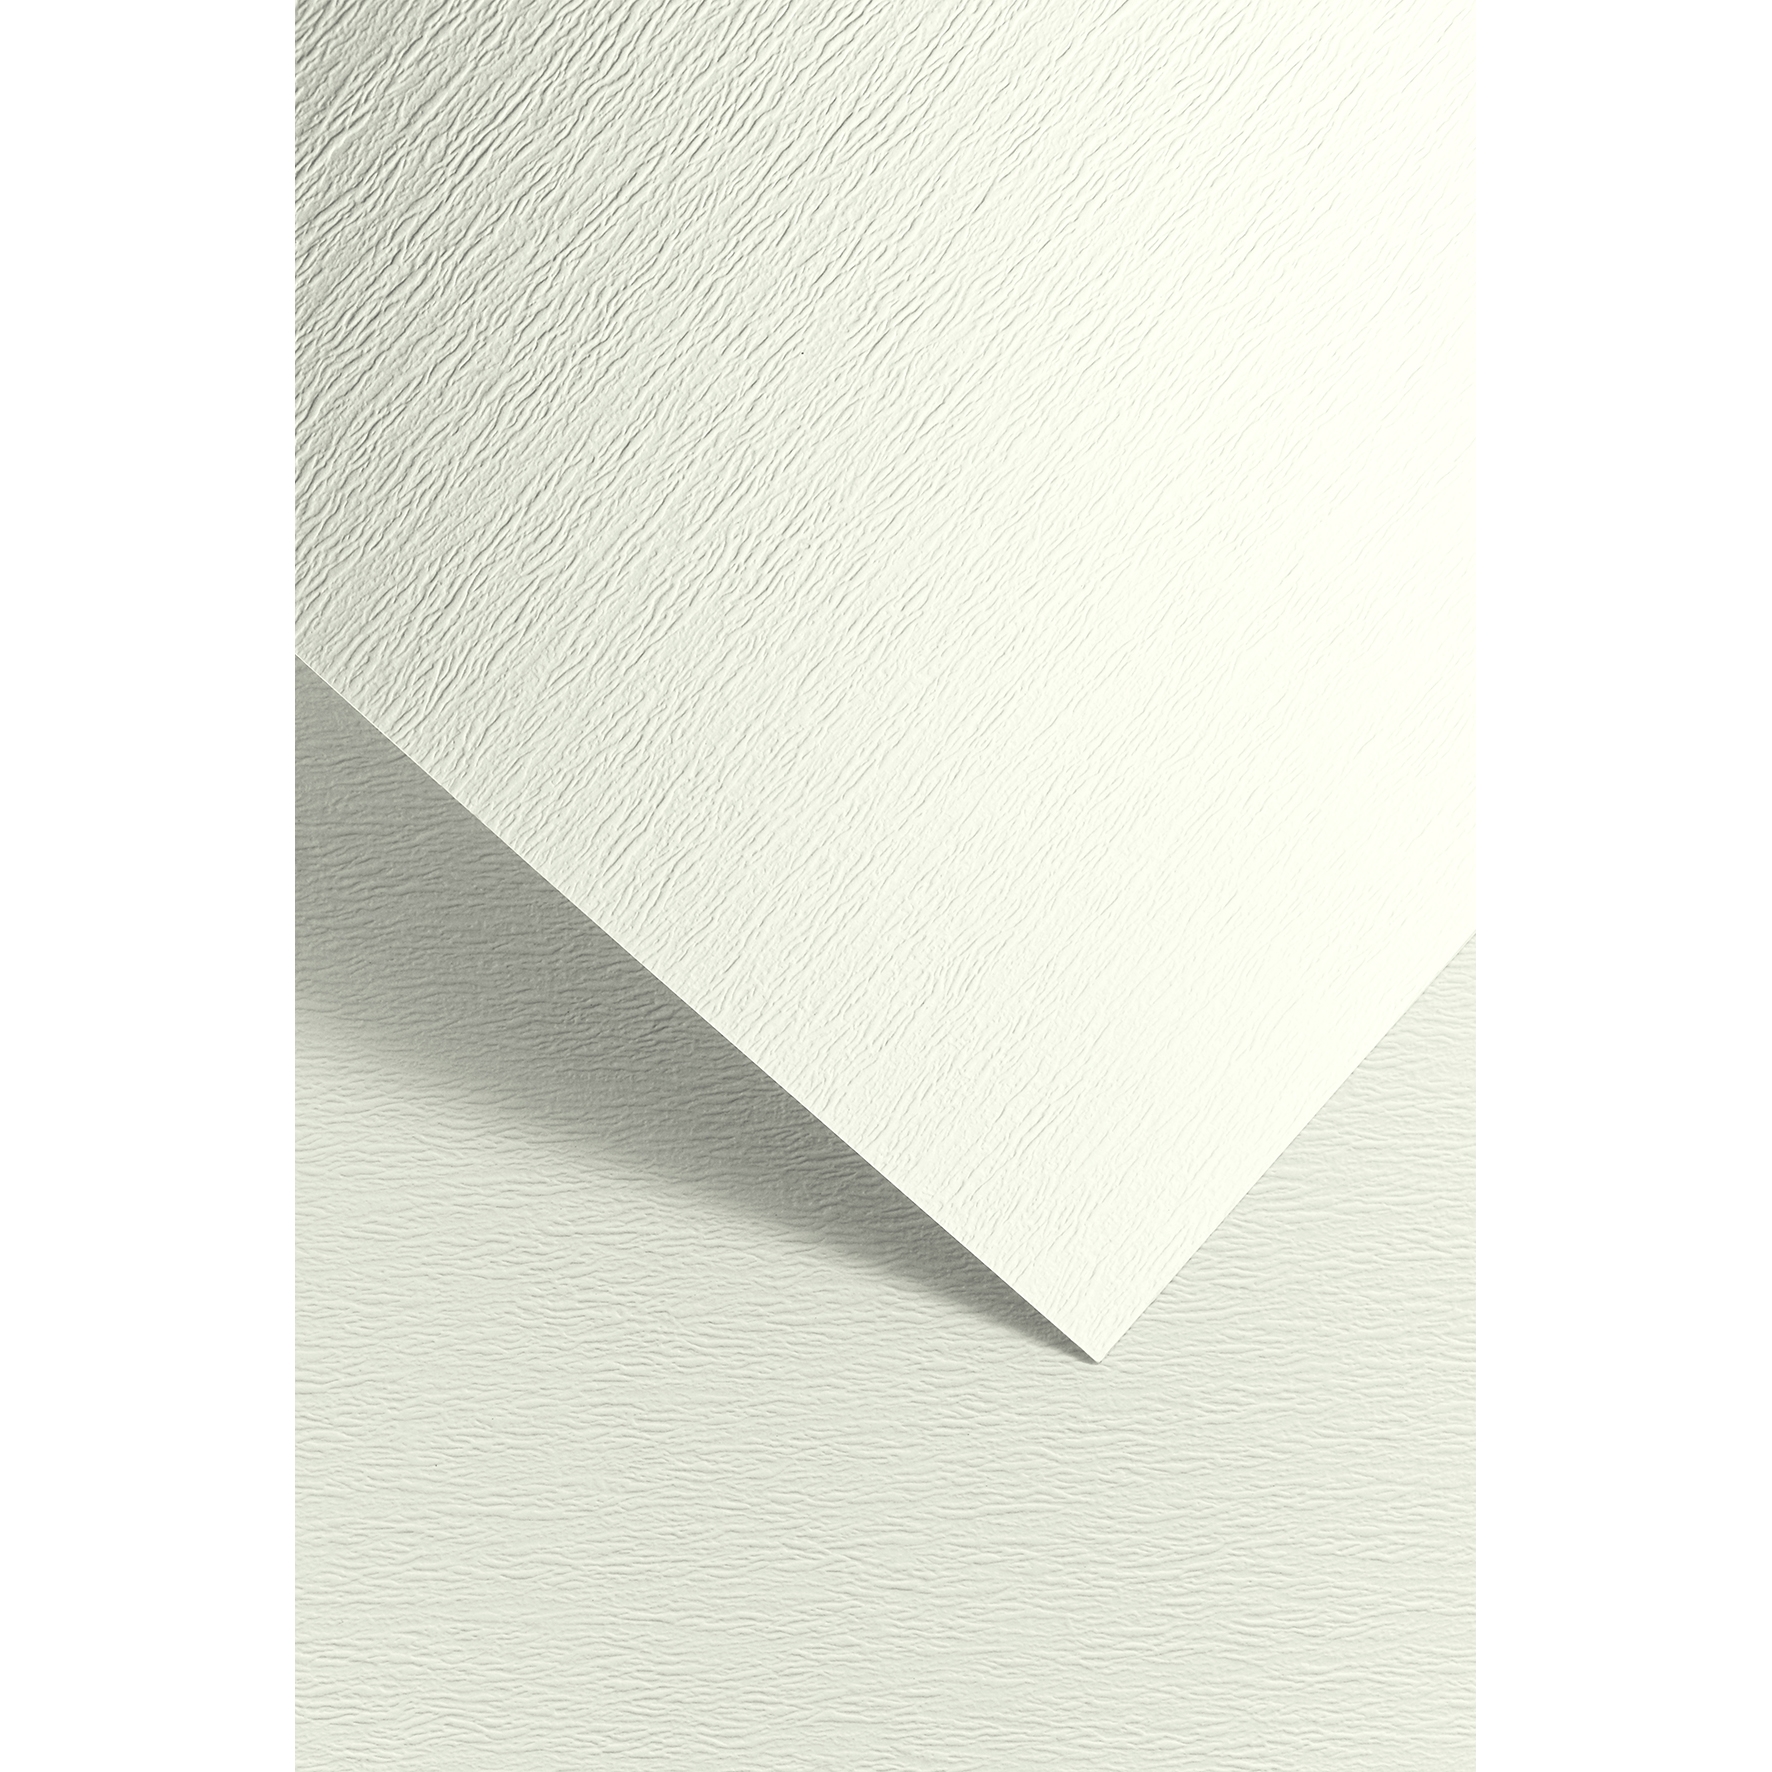 Ozdobný papír Atlanta, bílý, 230g, 20ks